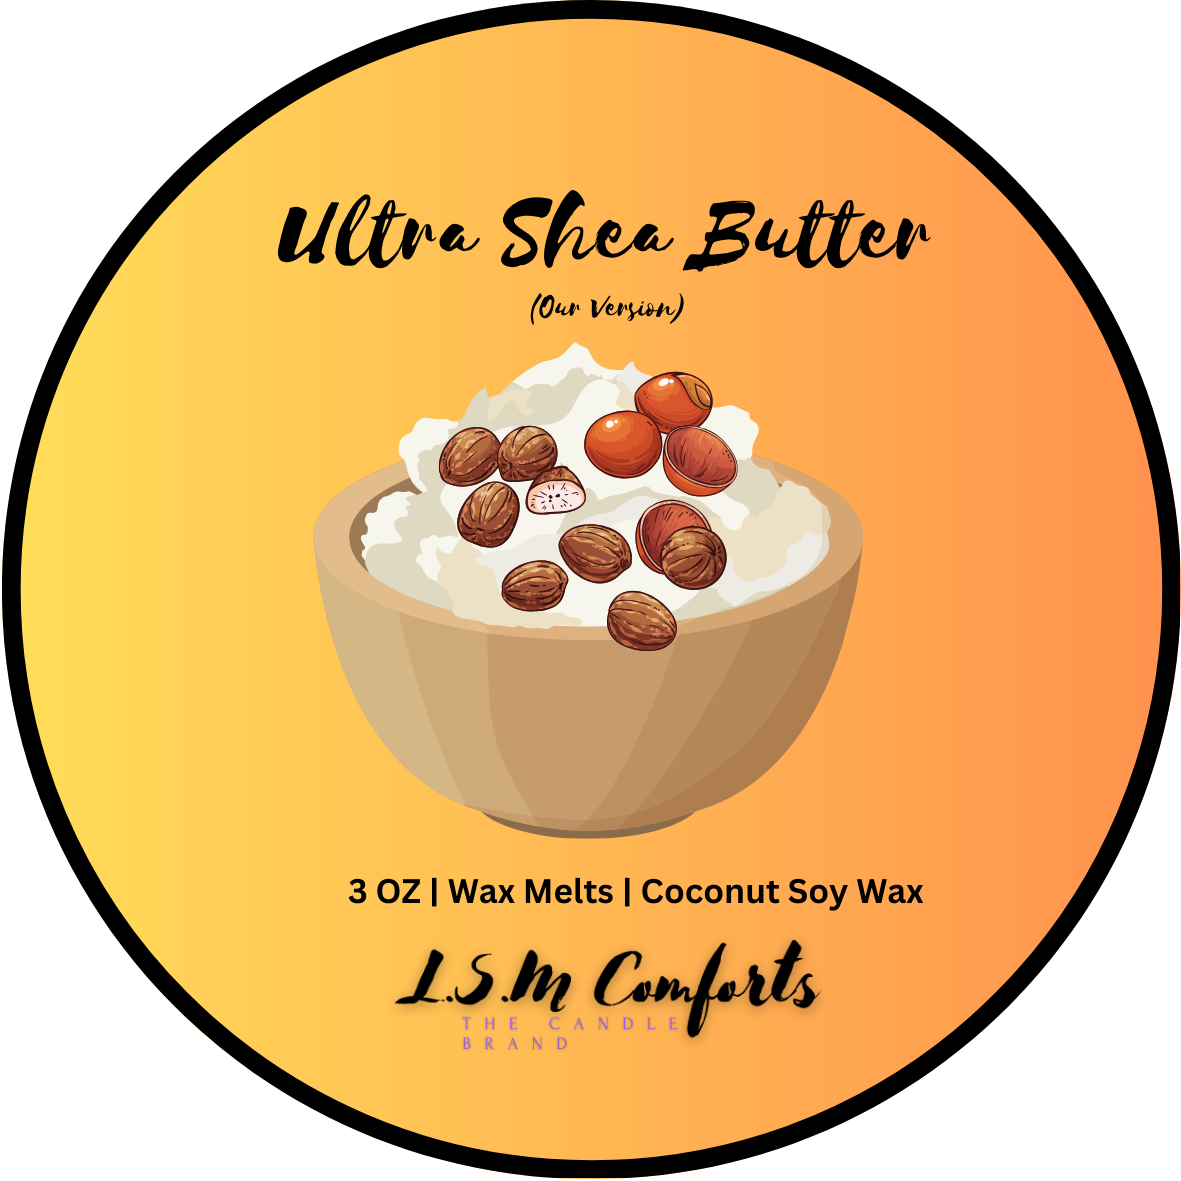 Ultra Shea Butter (Our Version) Wax Melts